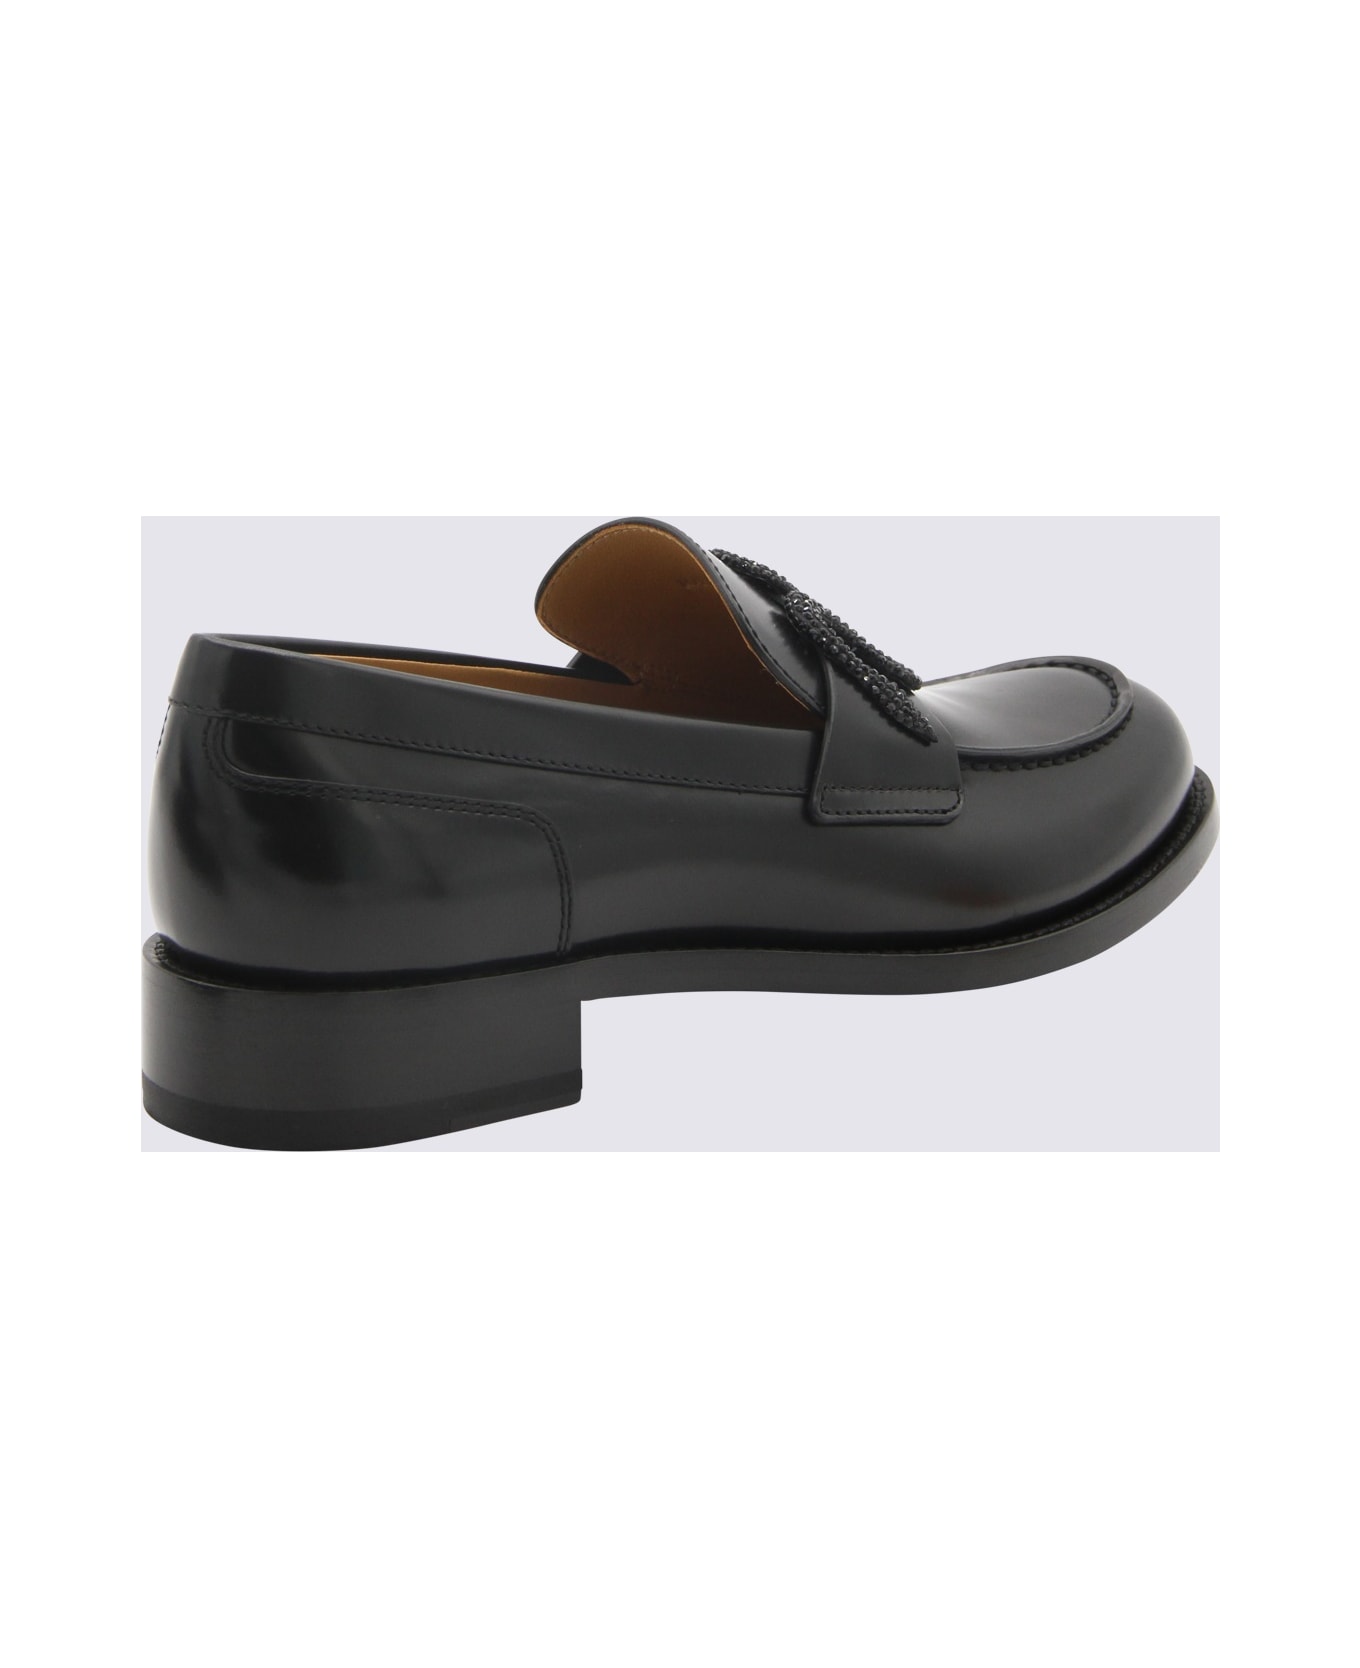 René Caovilla Black Leather Loafers - BLACK CALF/JET STRASS